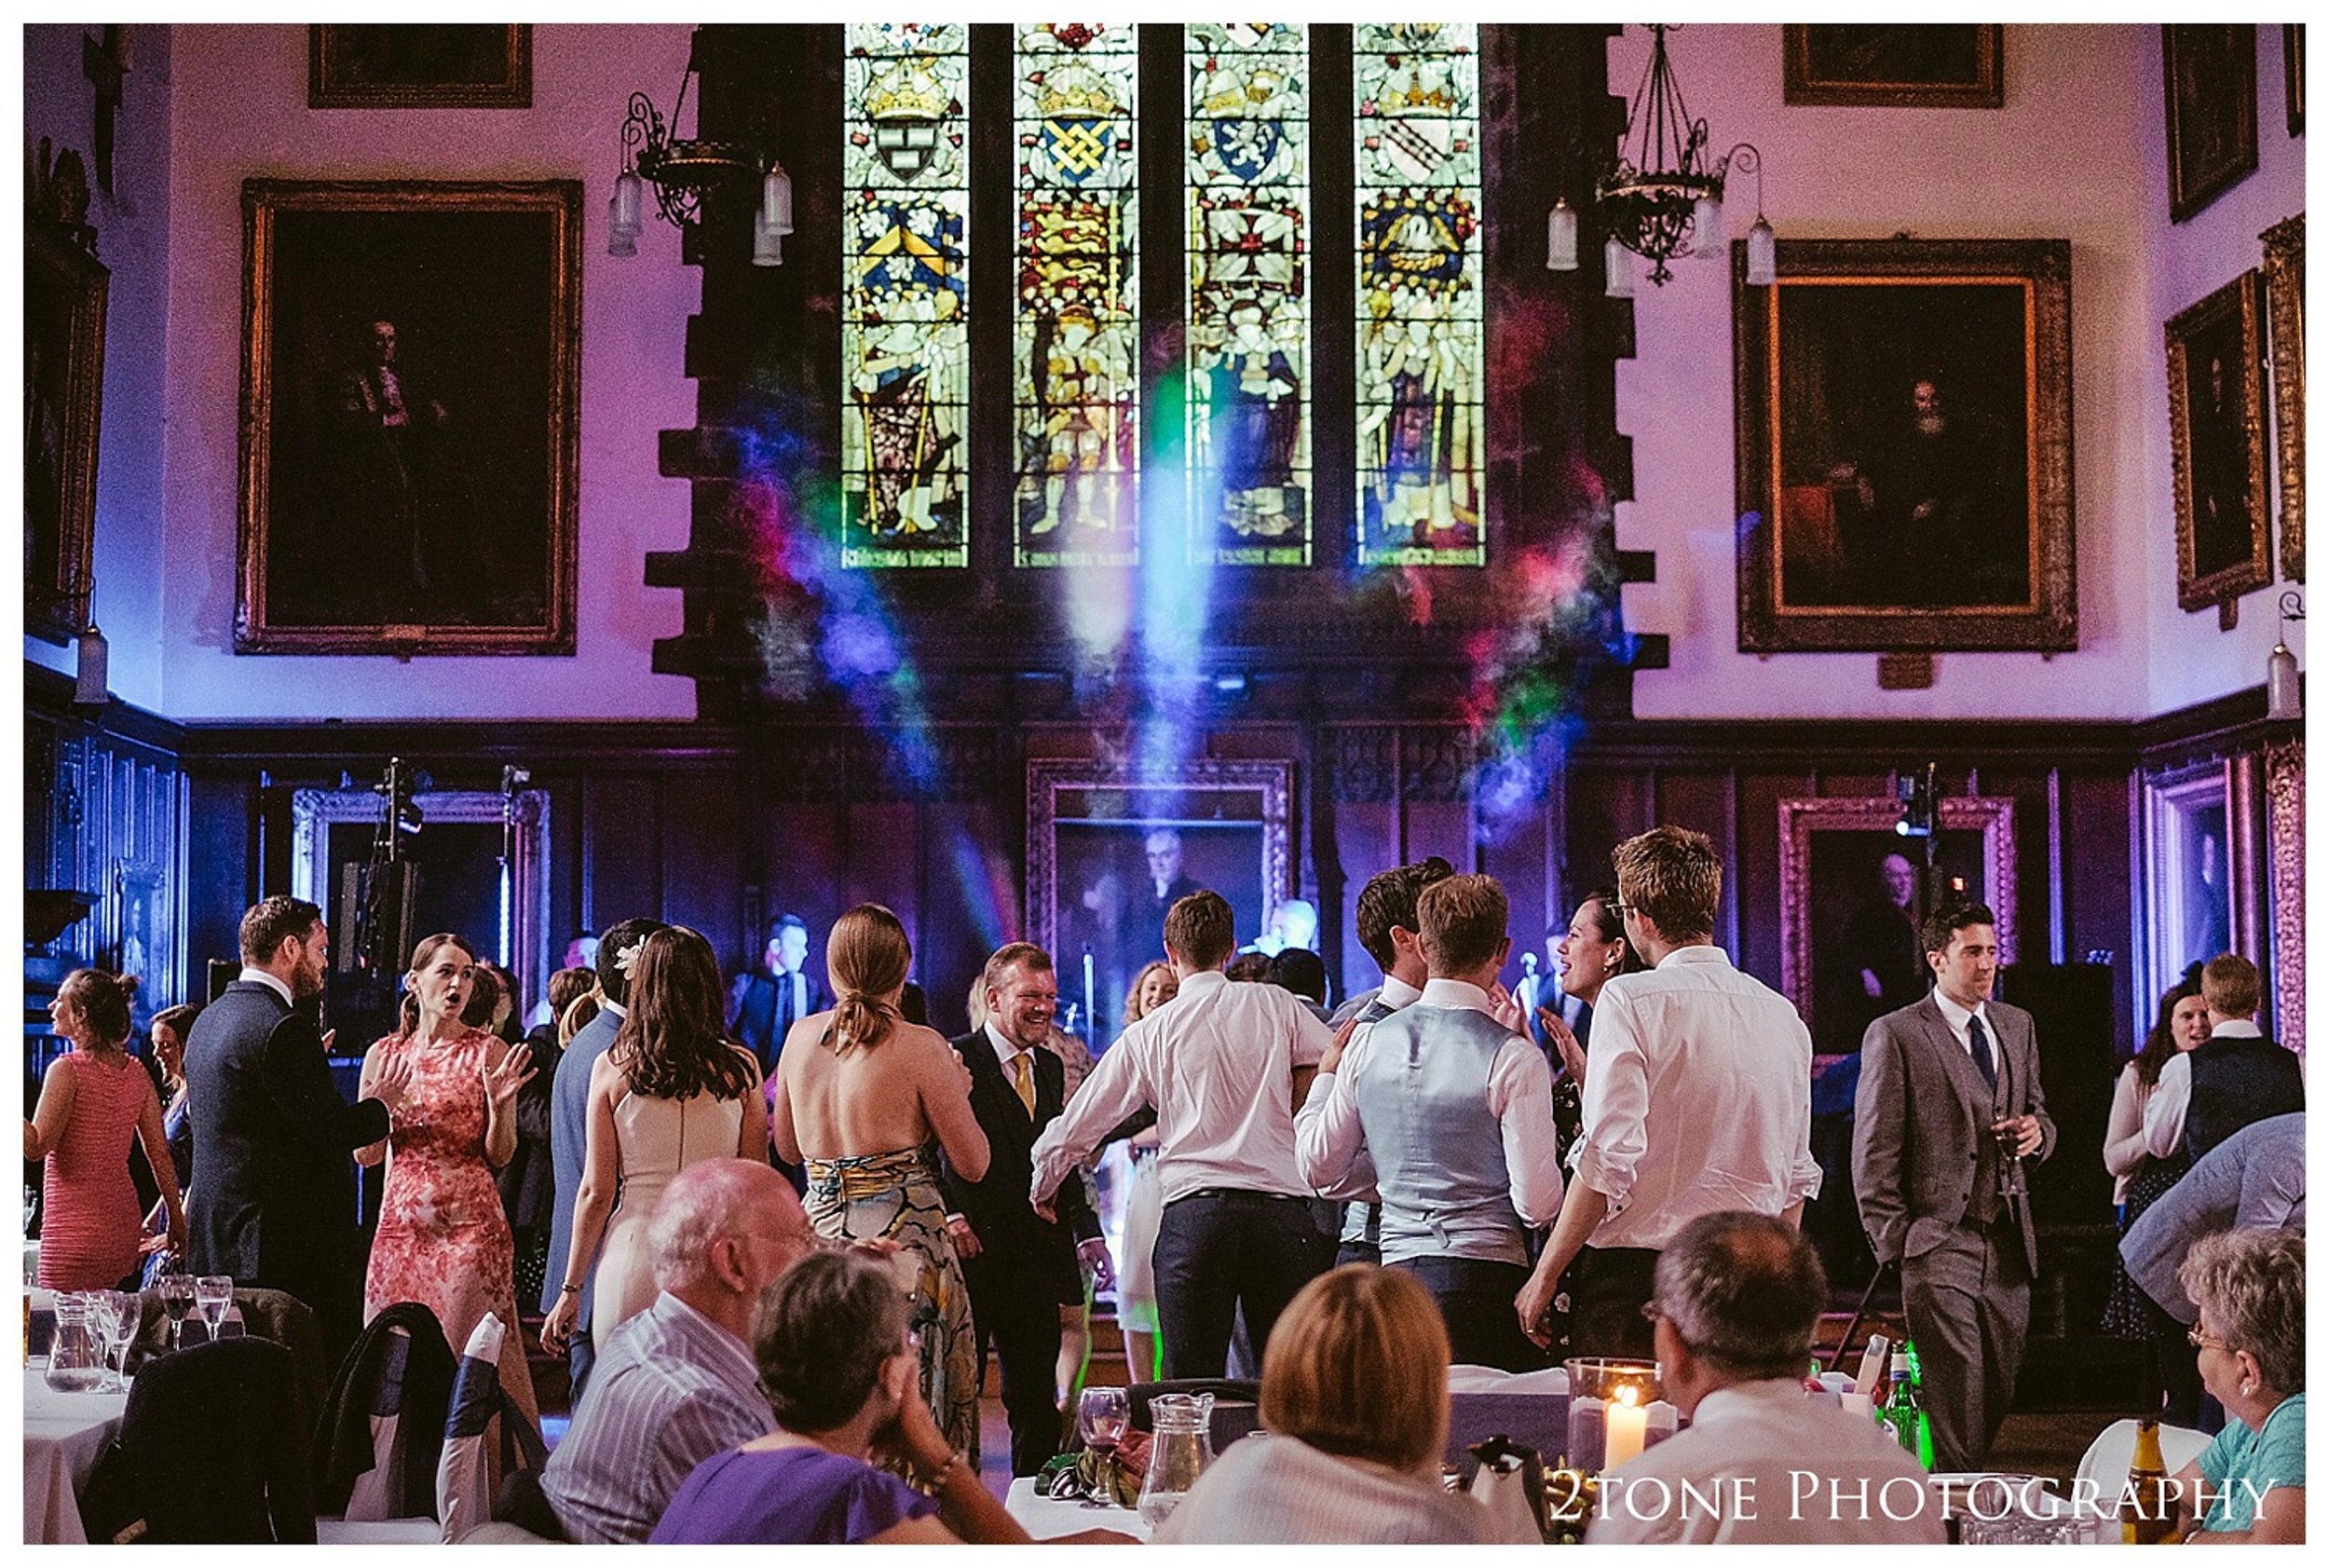 Durham Castle wedding